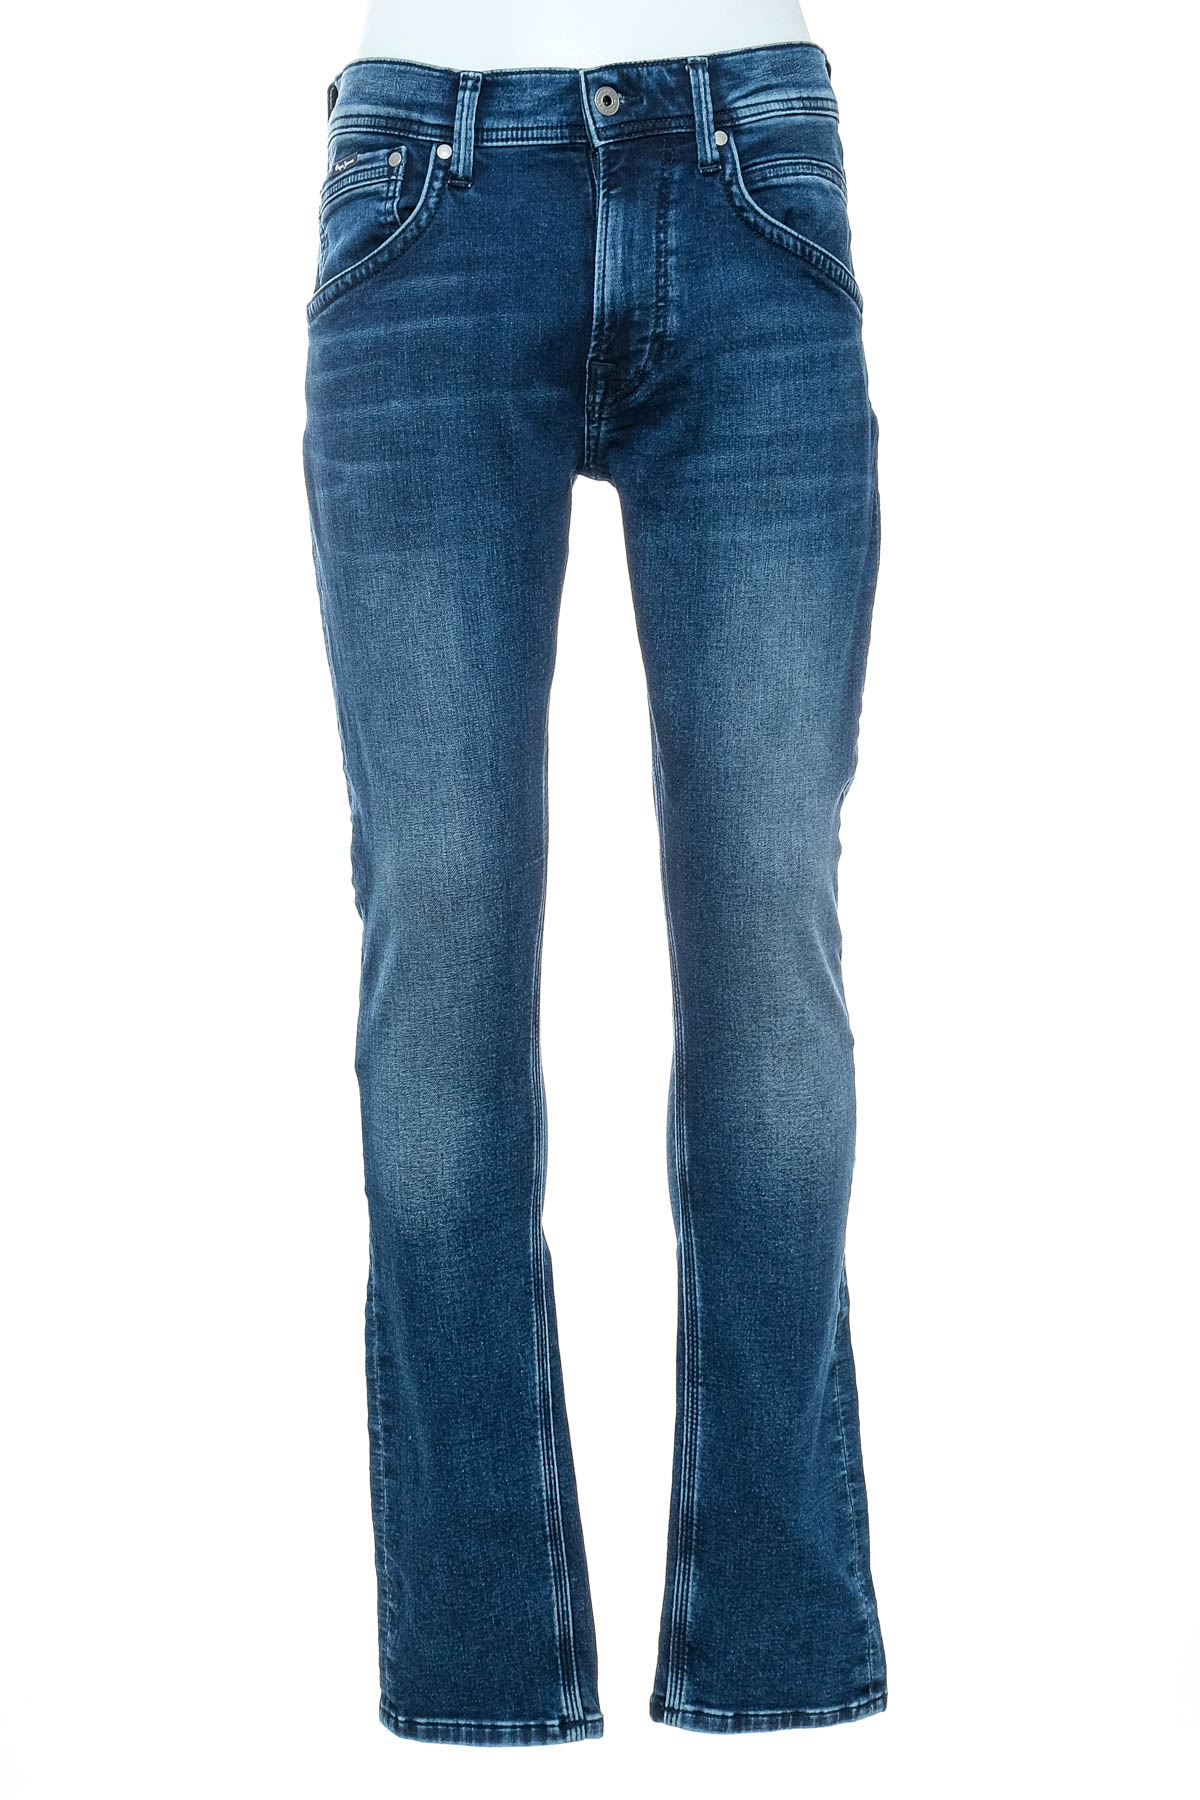 Jeans pentru bărbăți - Pepe Jeans - 0